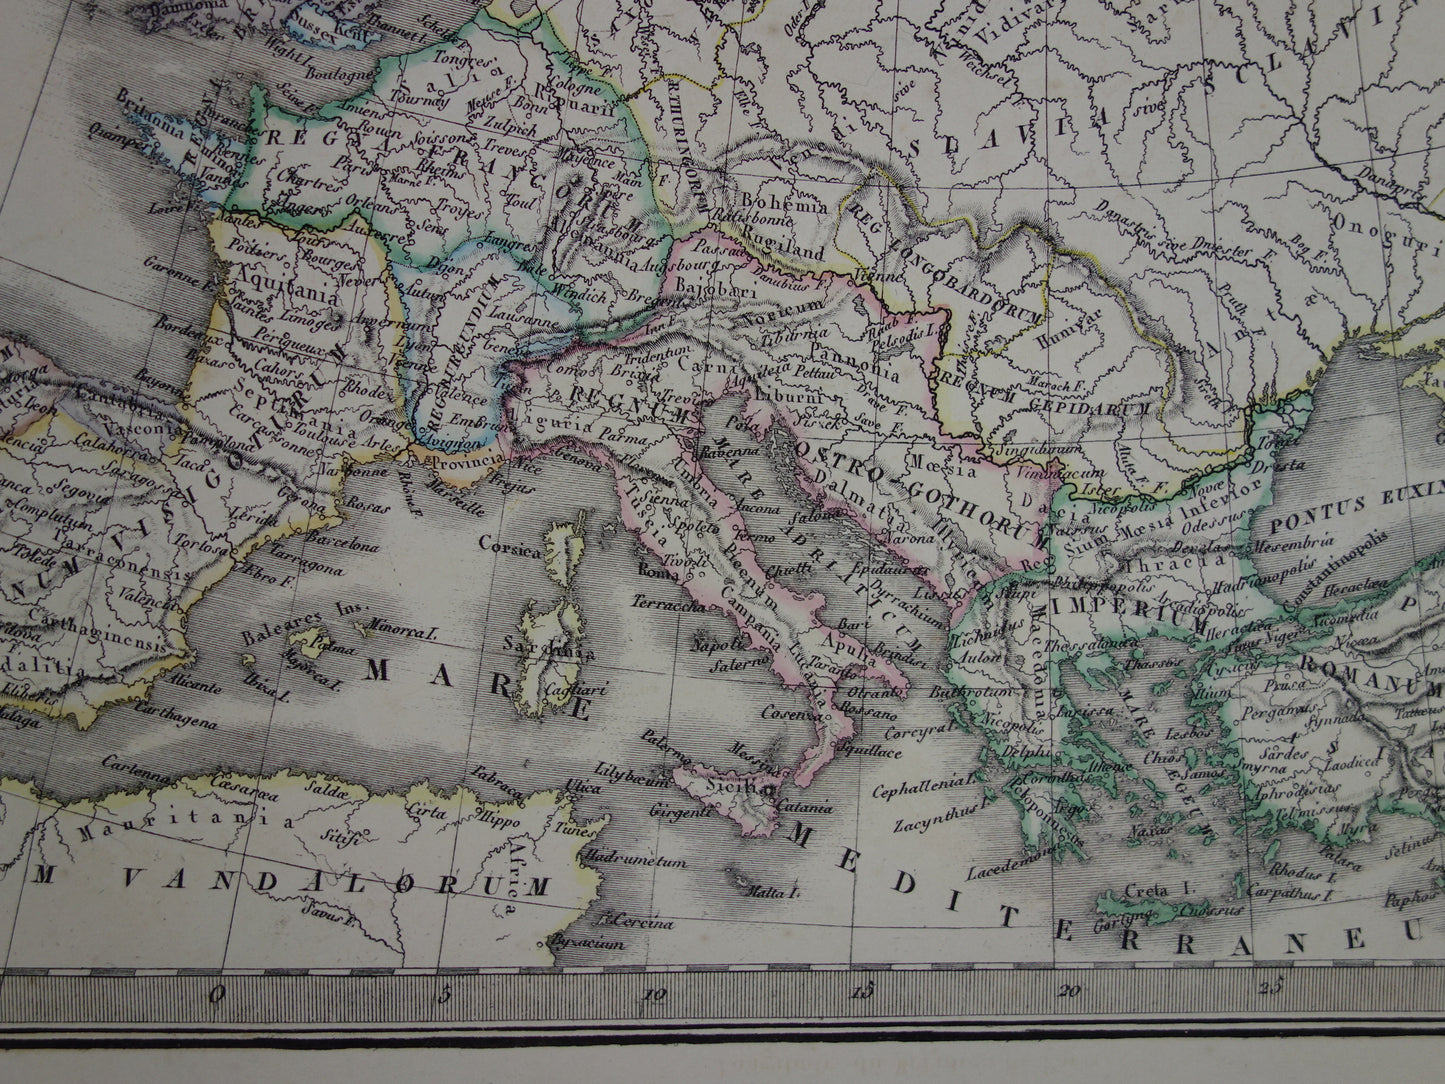 Oude kaarten over geschiedenis van Europa voor en na grote volksverhuizing antieke landkaart uit 1851 invallen barbaren